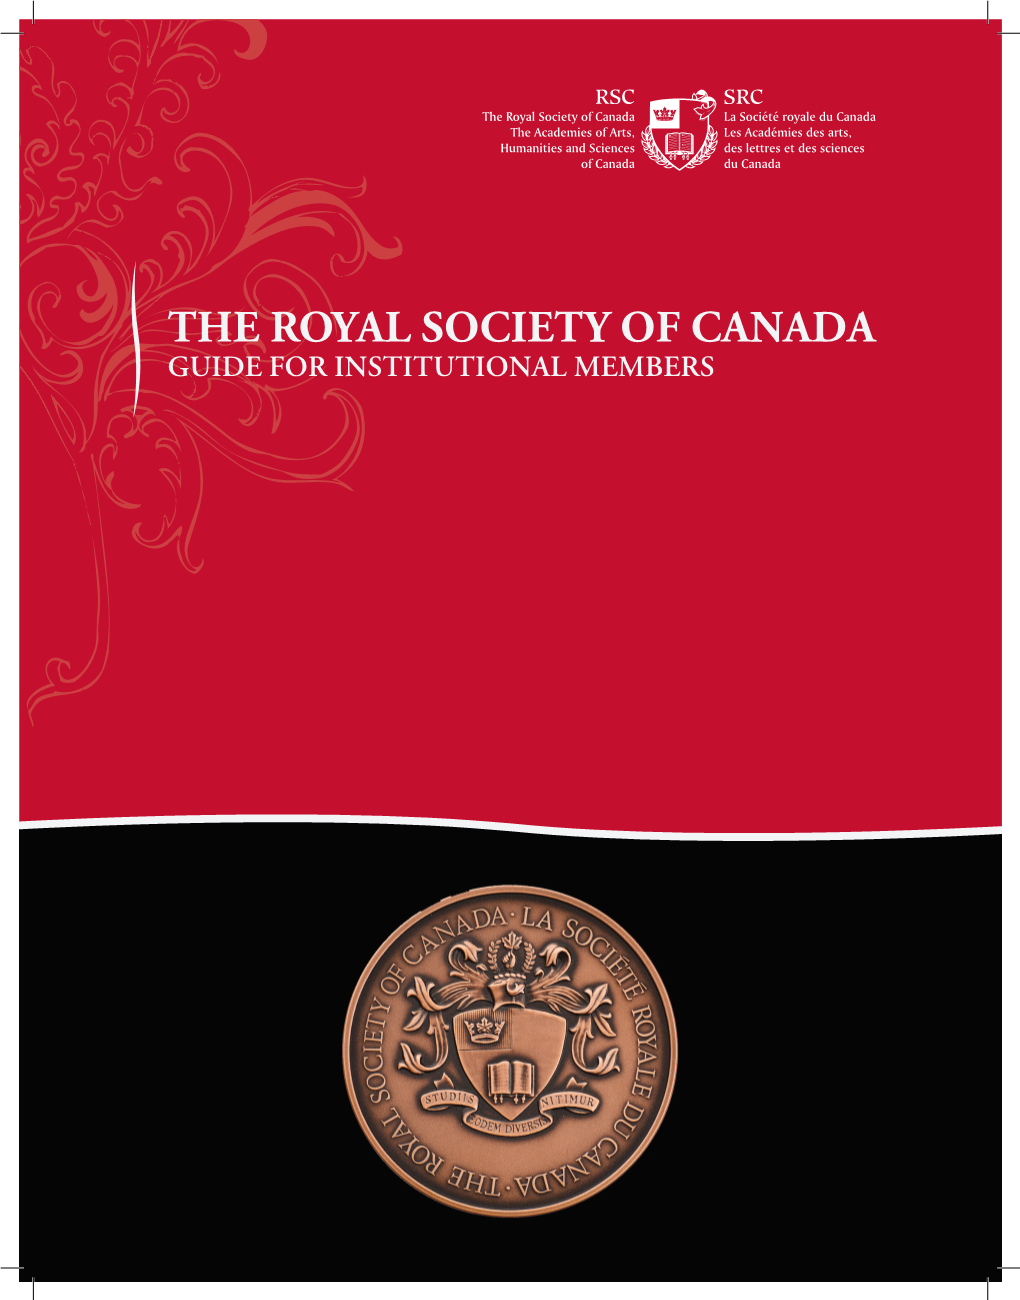 The Royal Society of Canada (RSC)